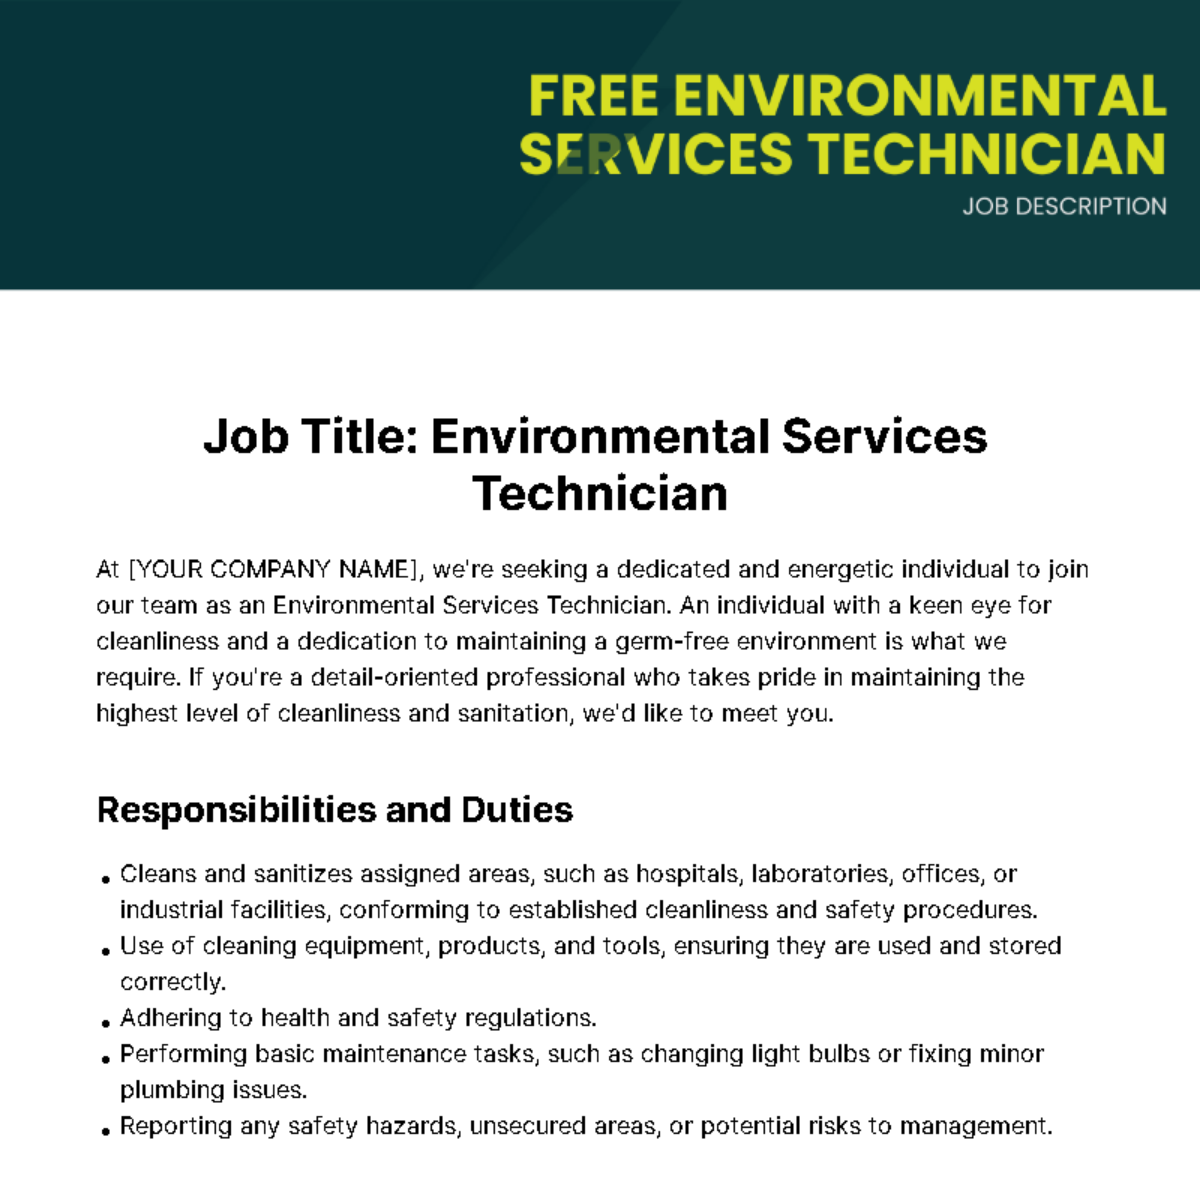 Environmental Services Technician Job Description Template